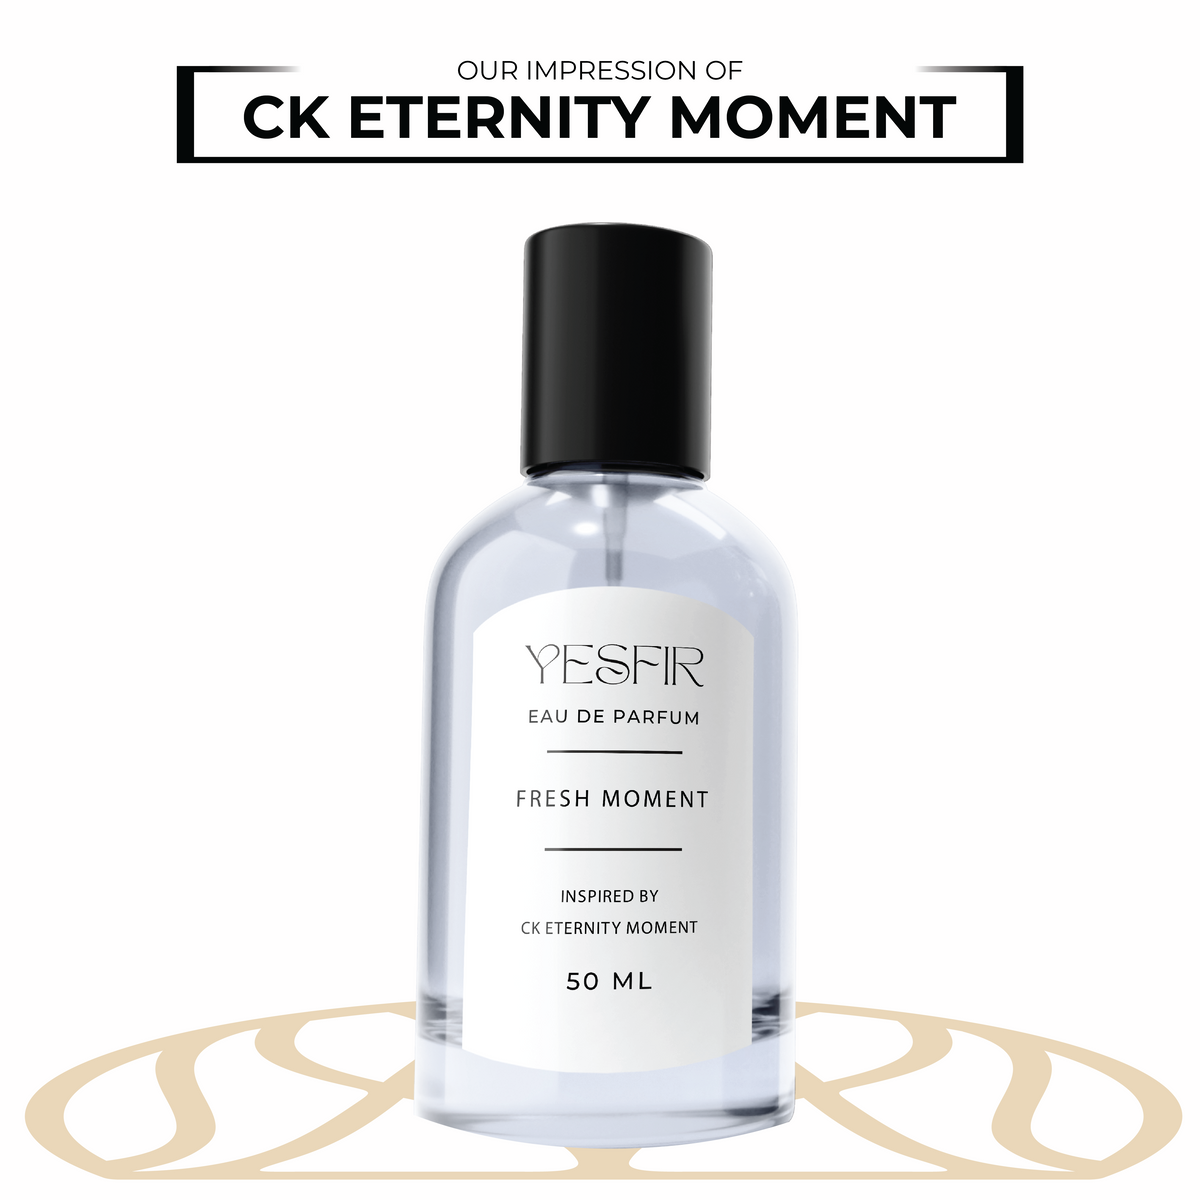 Fresh Moment - CK Eternity Moment for Women